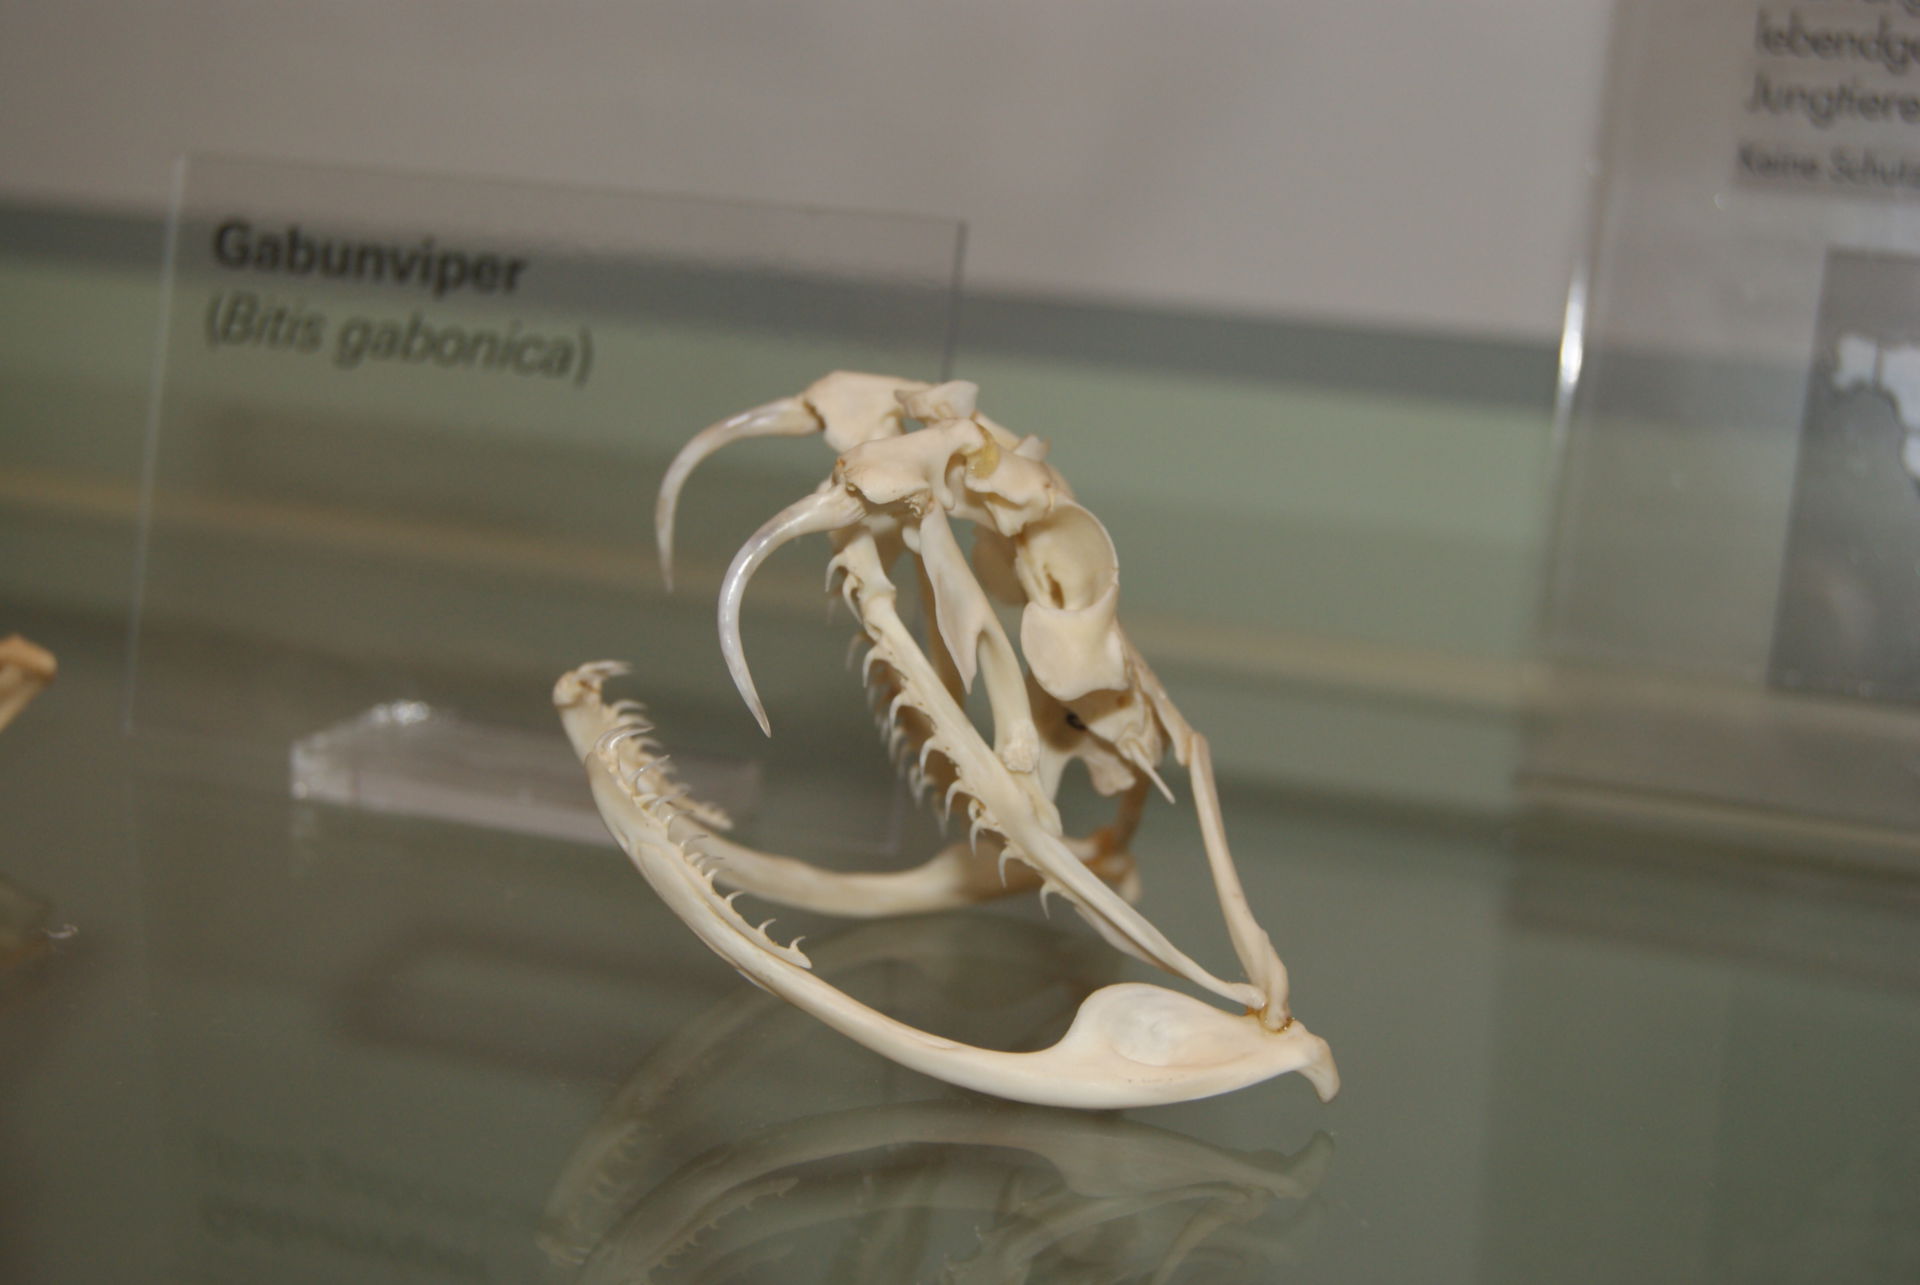 Gaboon viper (skull)